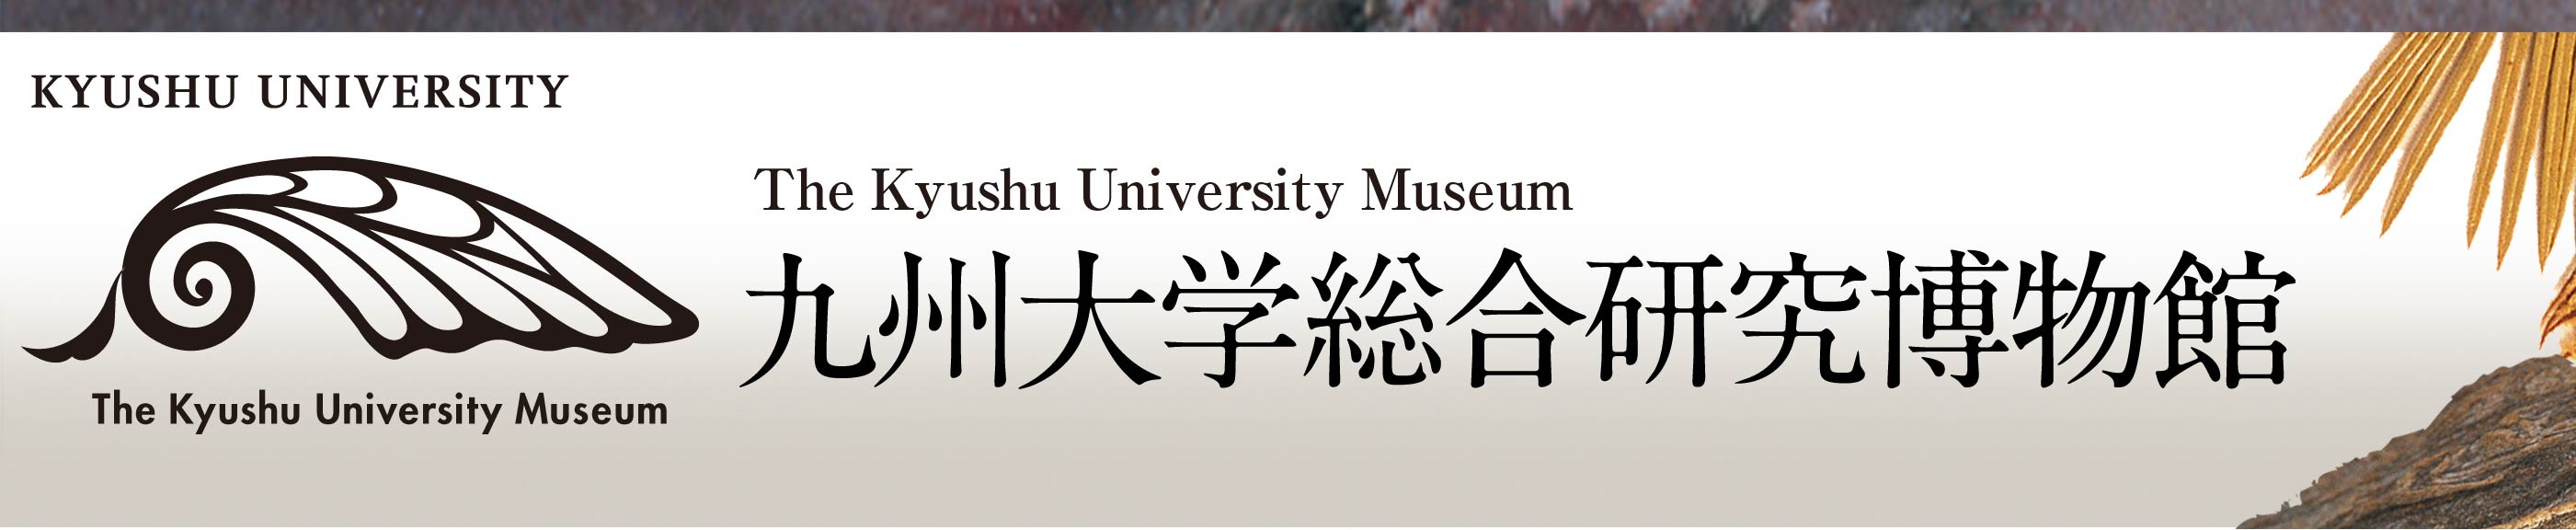 九州大学オンライン博物館